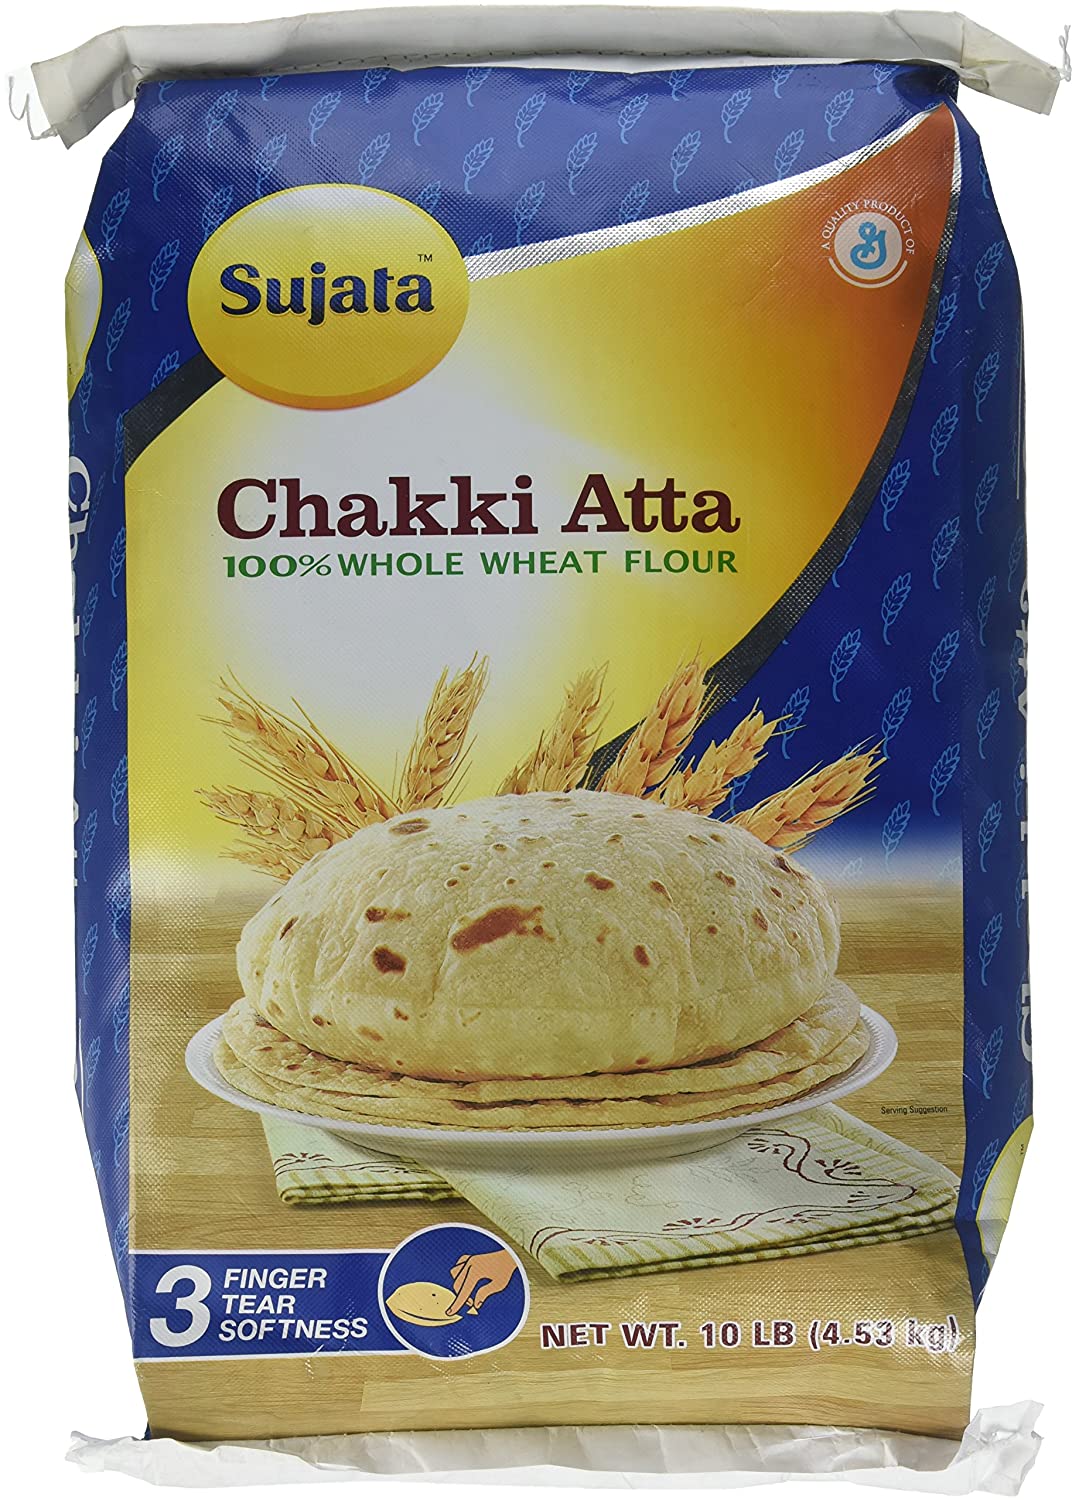 Sujata Chakki Atta Whole Wheat Flour